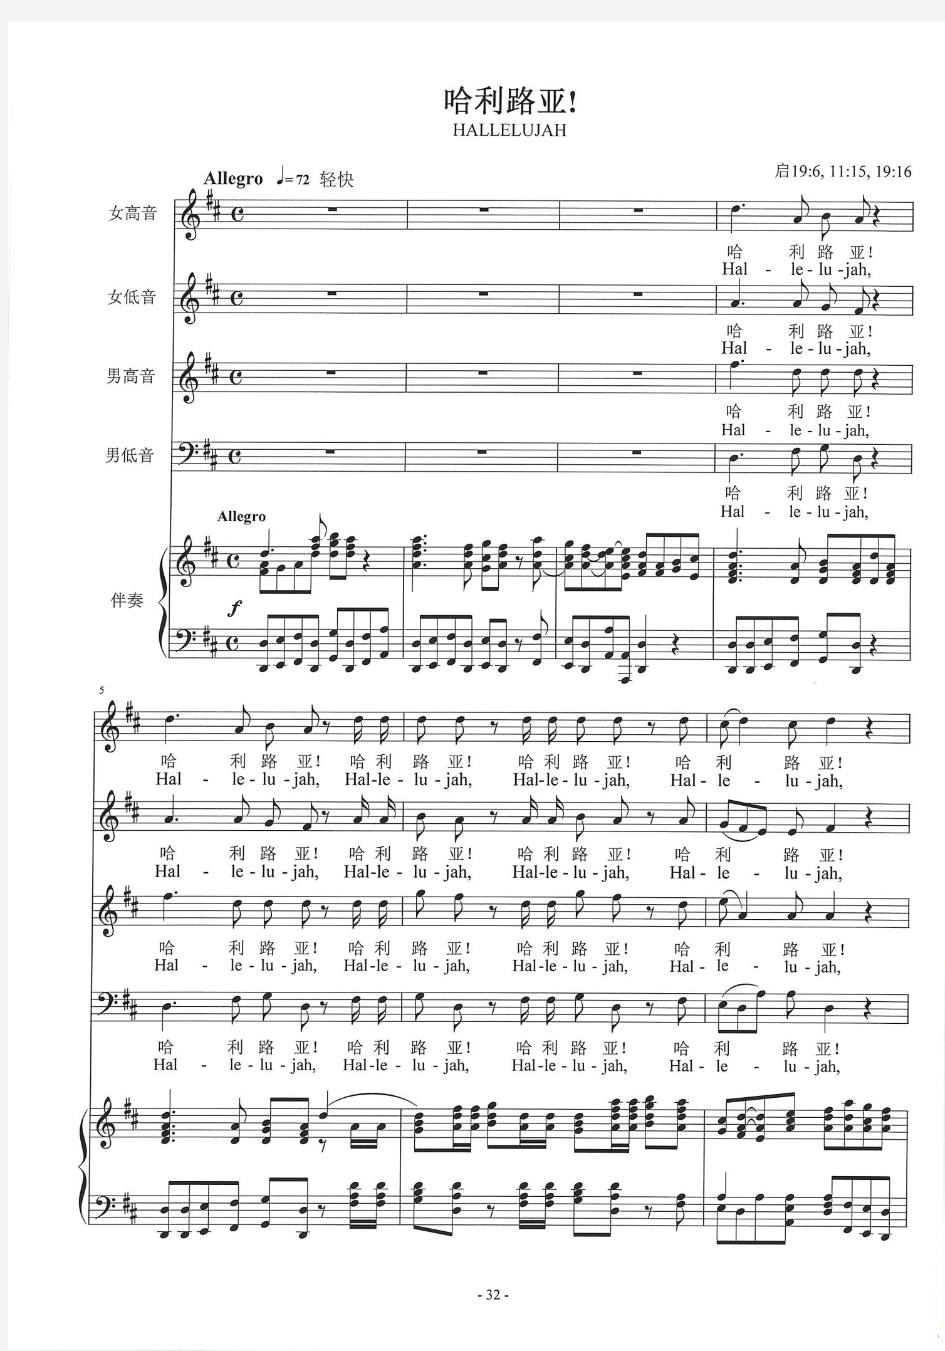 《哈利路亚》亨德尔版-合唱谱+钢琴伴奏